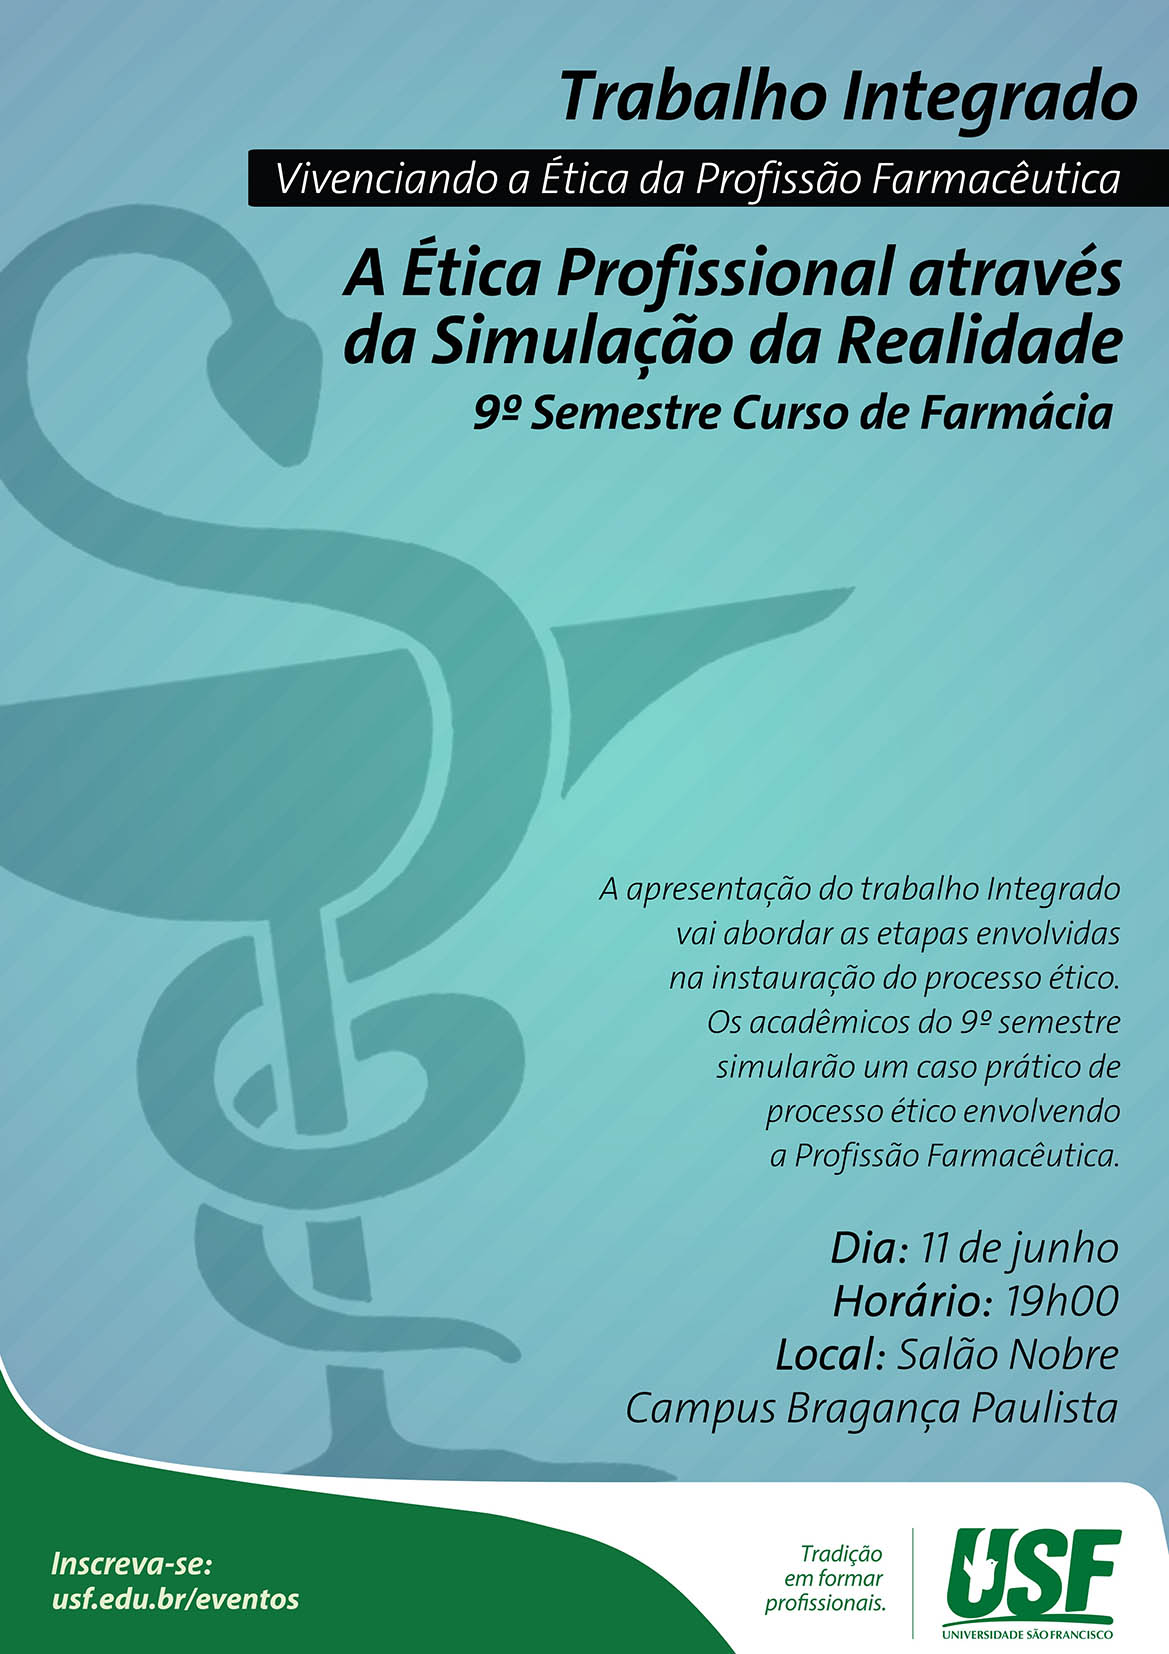 “Plenária Simulada - Vivenciando a Ética da Profissão Farmacêutica” no Campus Bragança Paulista